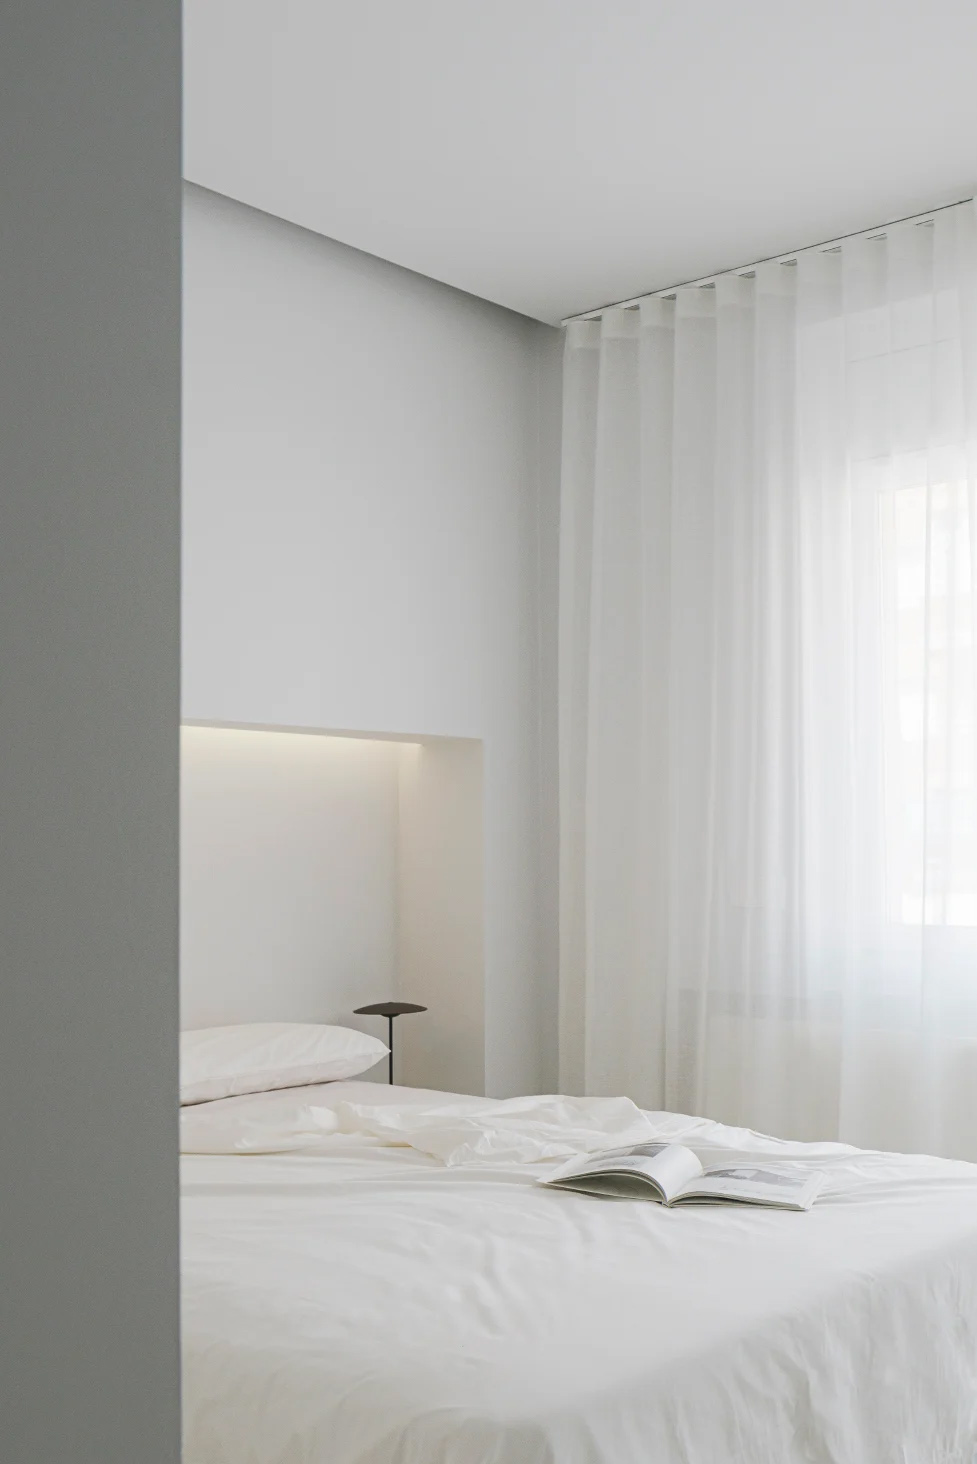 极简公寓设计案例,公寓设计,极简主义,国外极简风格公寓设计,Deza Setien,马德里,原木色+白色,公寓设计方案,135㎡